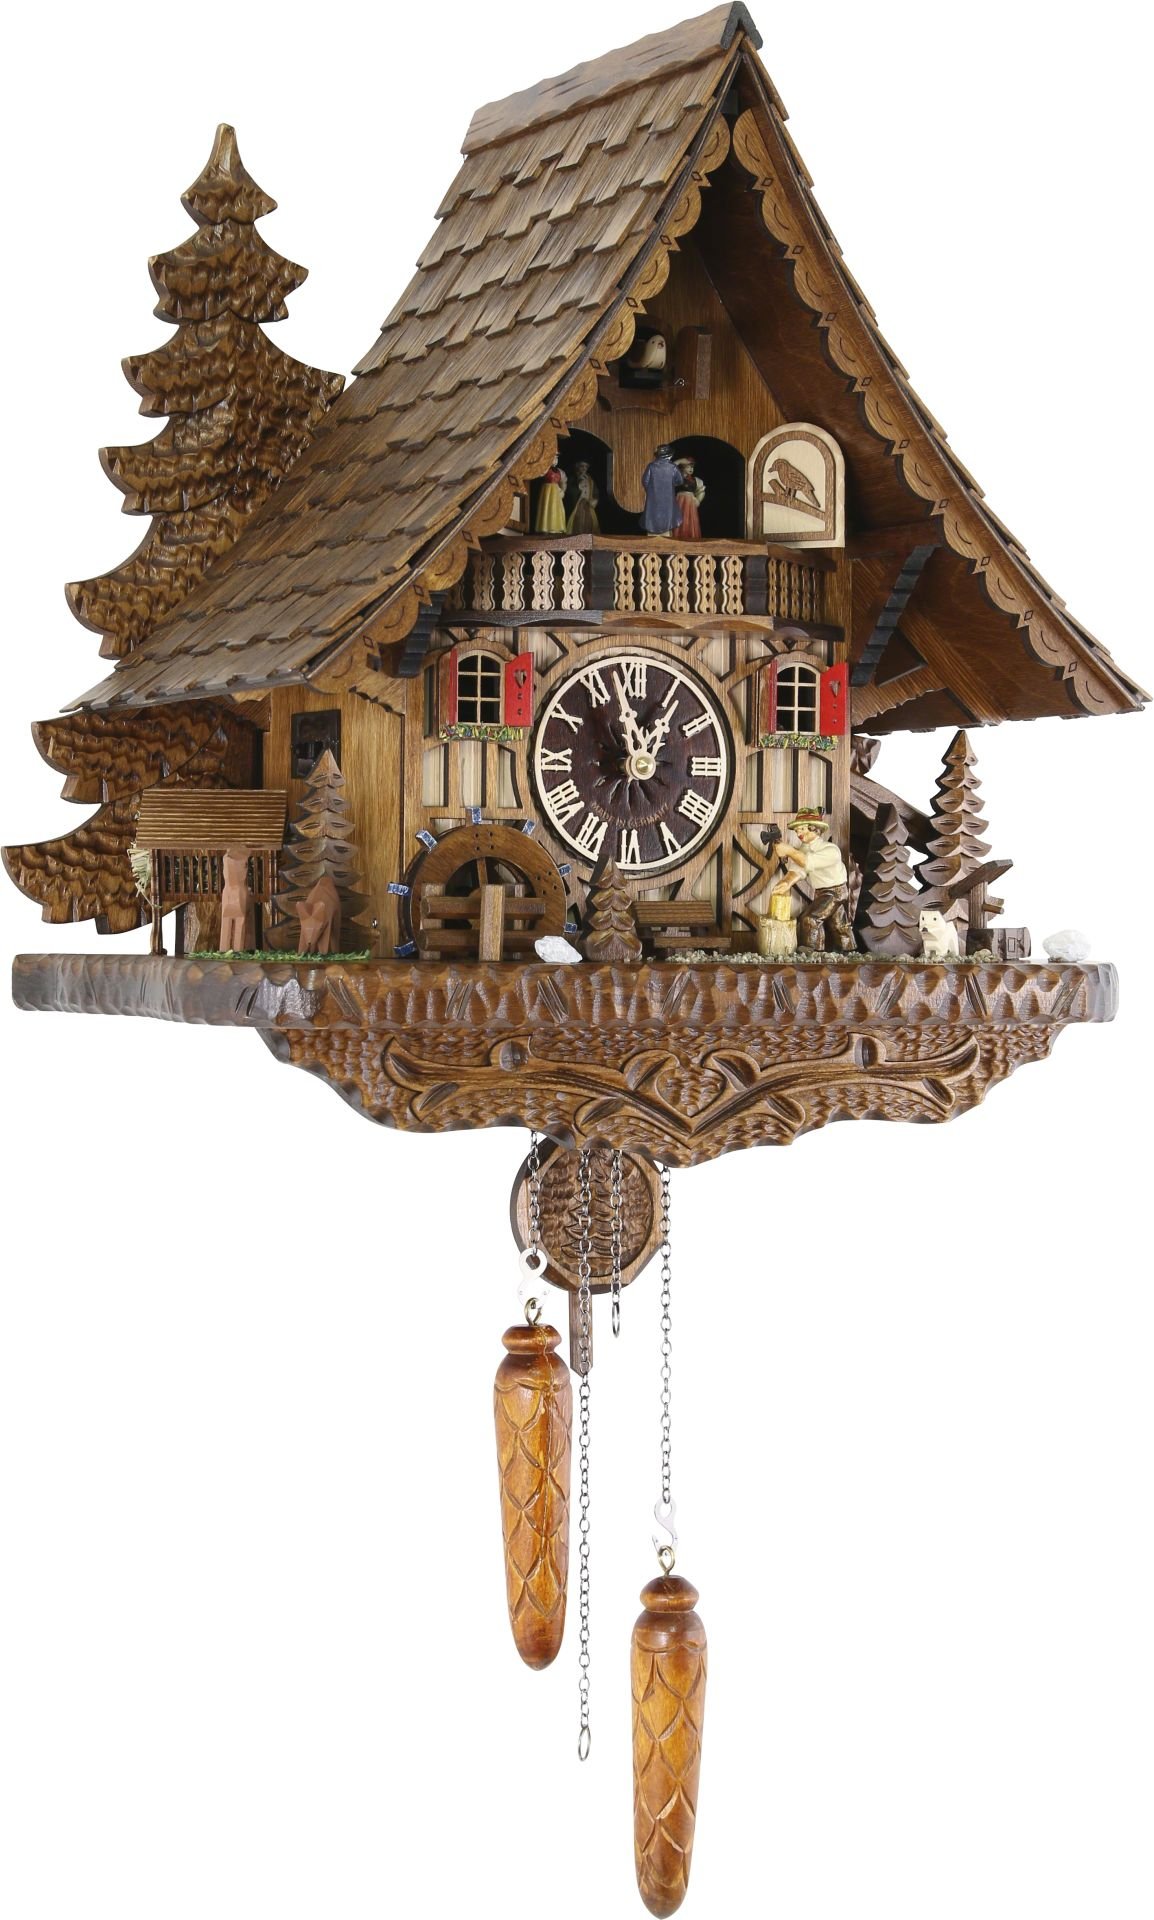 Kuckucksuhr Chalet-Stil Quarz-Uhrwerk 44cm von Engstler